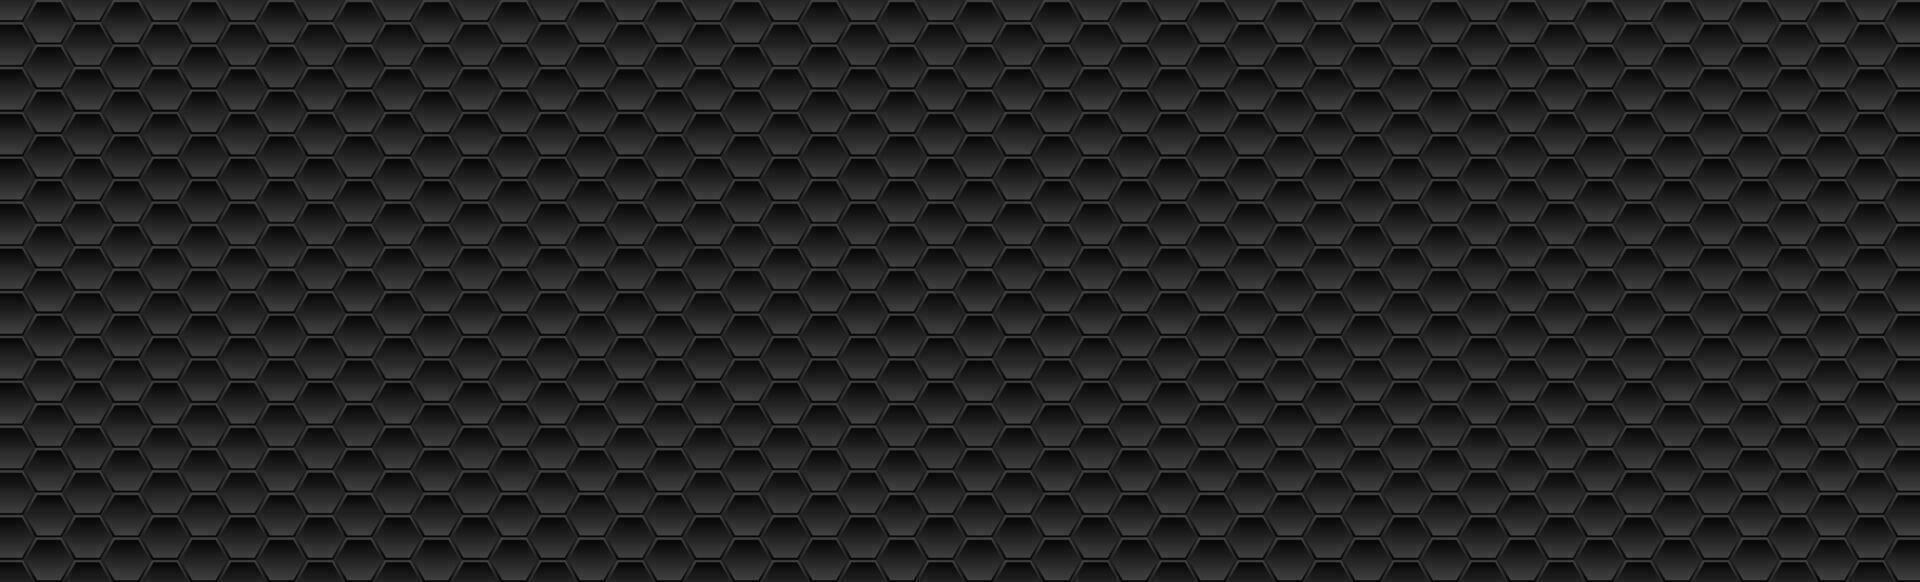 noir hexagonal texture abstrait La technologie Contexte vecteur